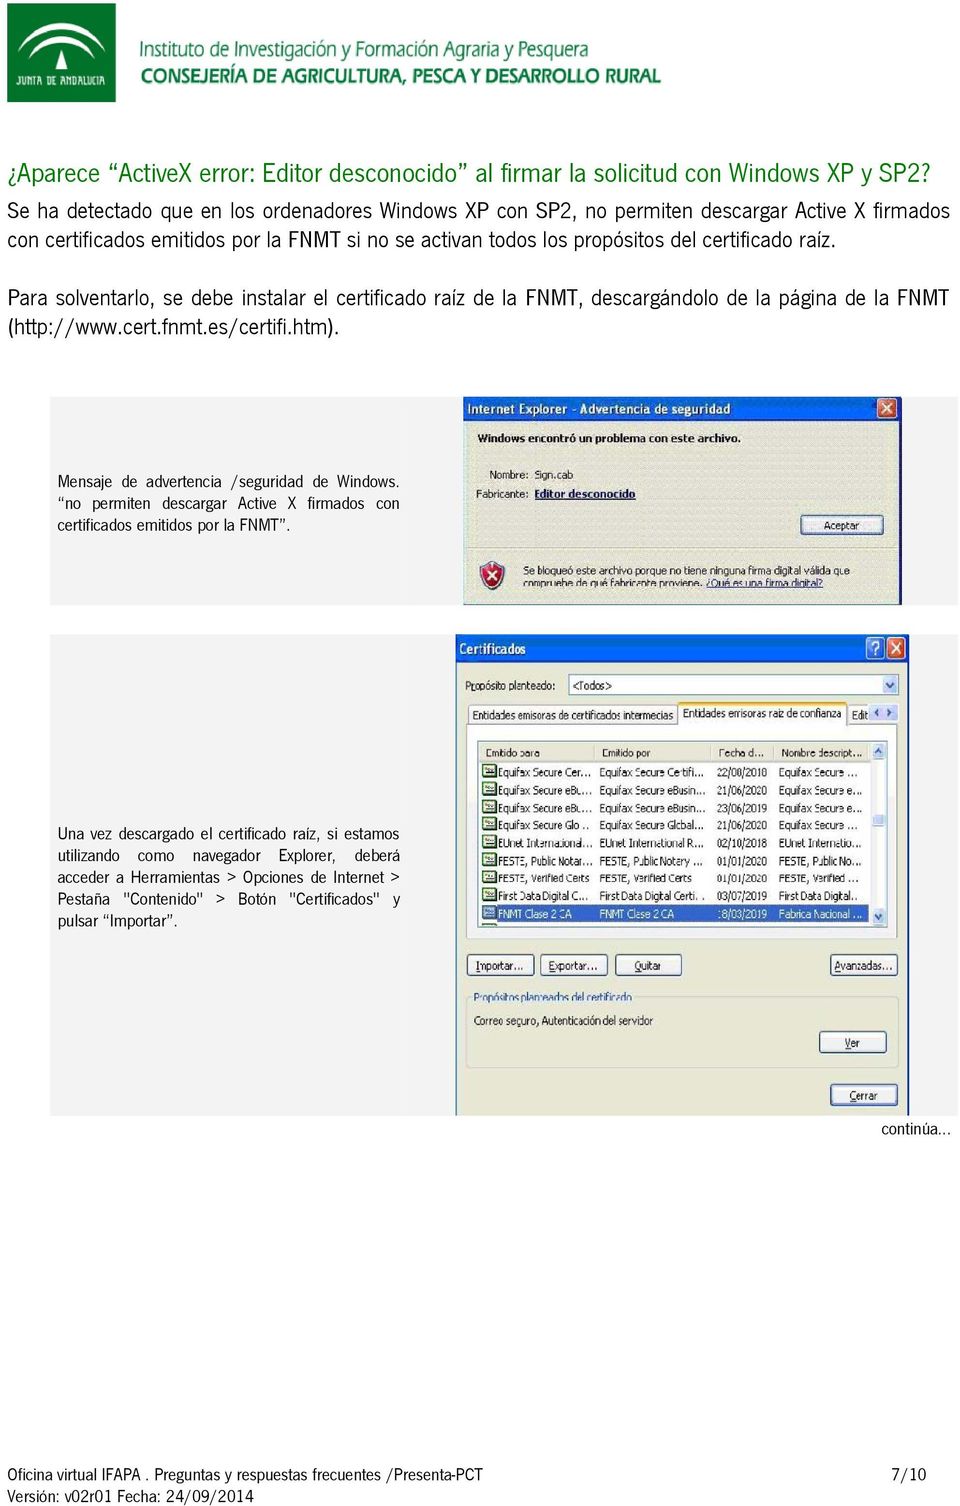 raíz. Para solventarlo, se debe instalar el certificado raíz de la FNMT, descargándolo de la página de la FNMT (http://www.cert.fnmt.es/certifi.htm).